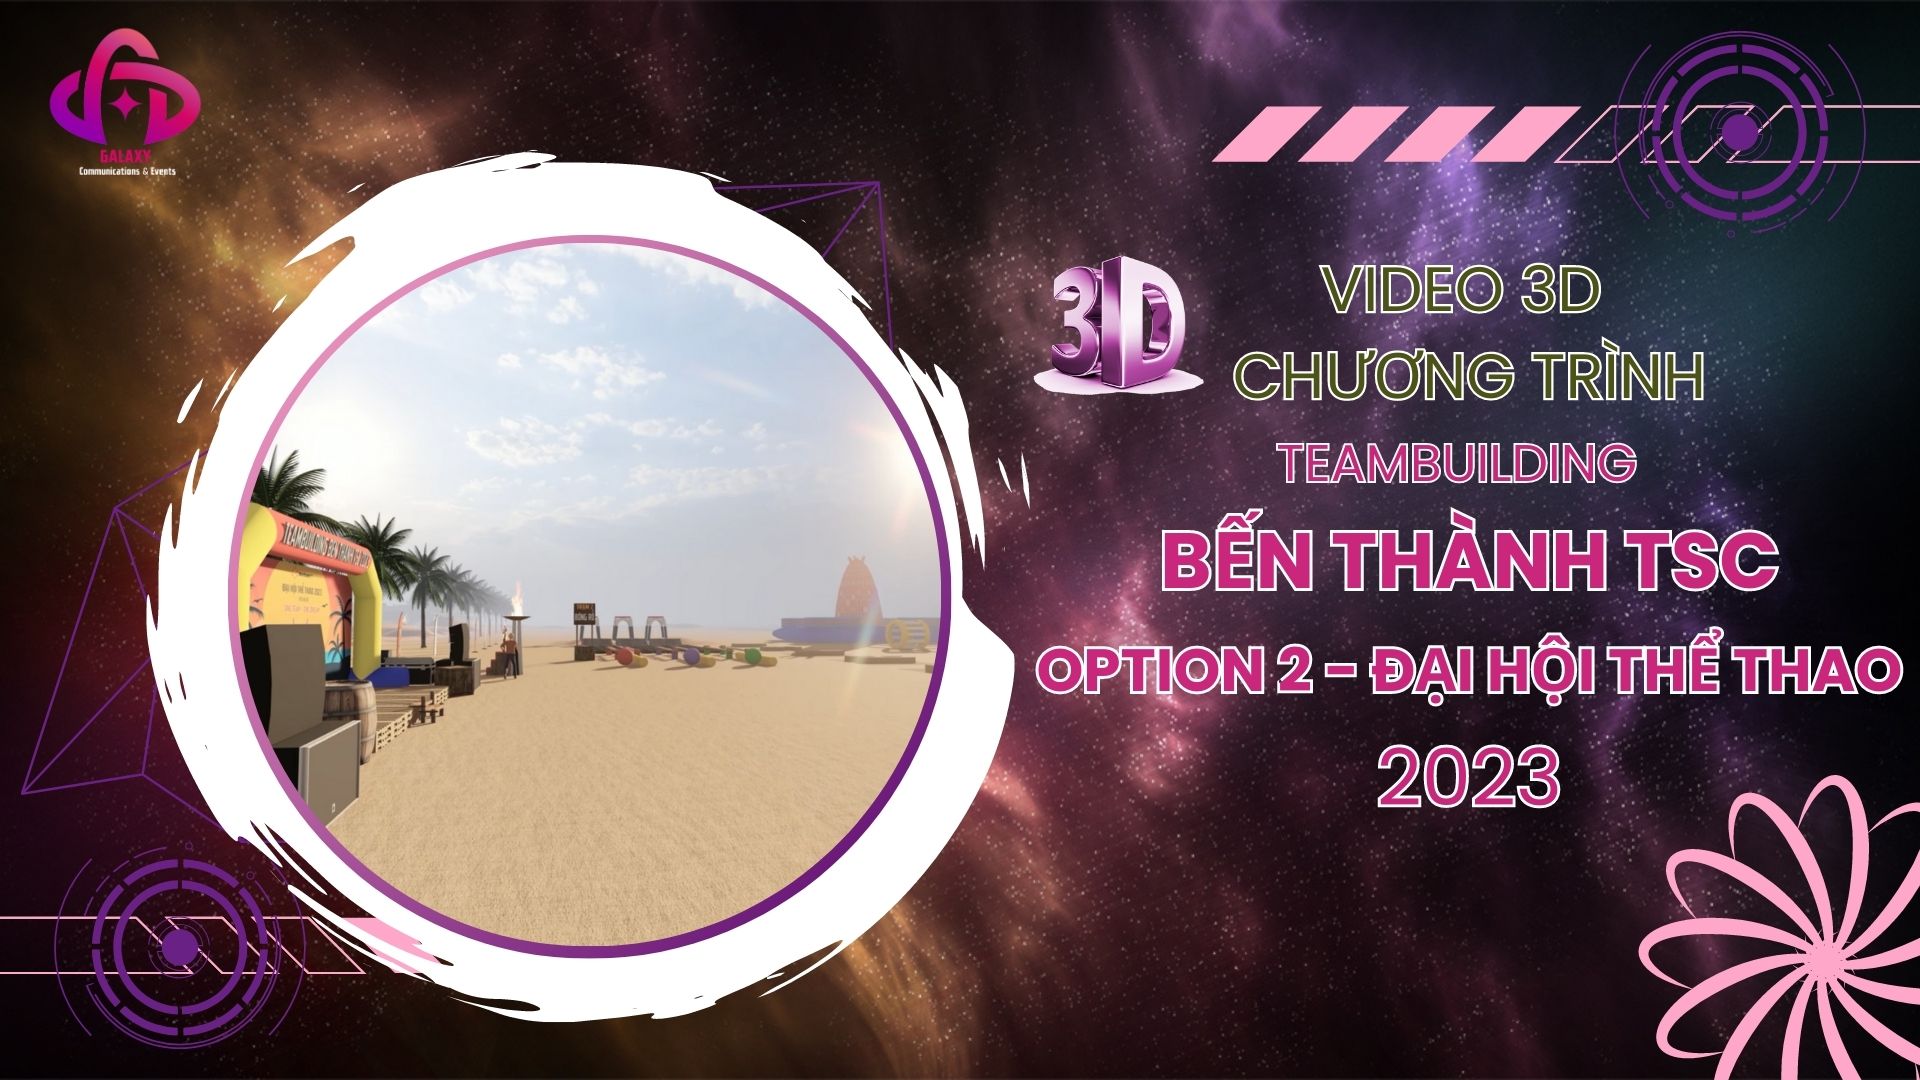 [Official Video 3D] Teambuilding Bến Thành TSC 2023 - Idea Option 2 - Đại Hội Thể Thao